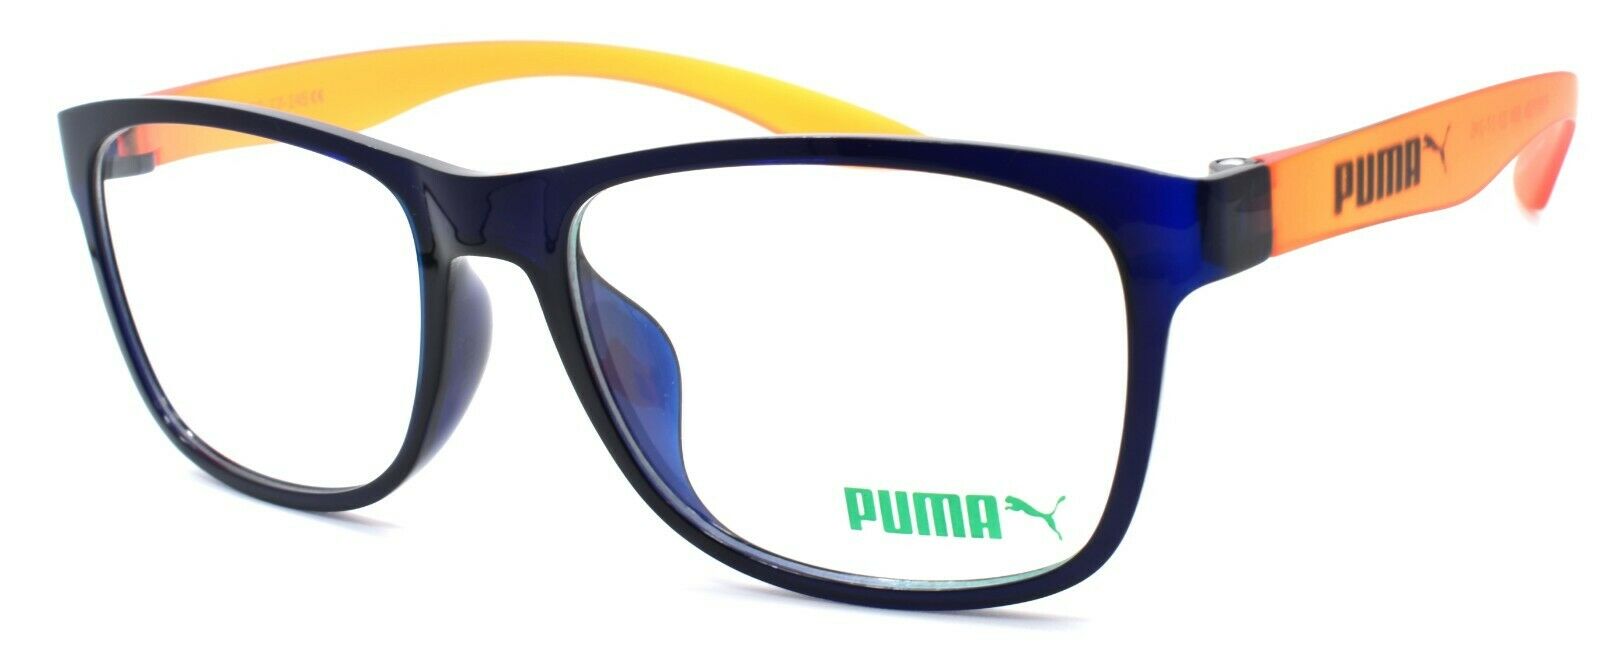 1-PUMA PU0035OA 004 Unisex Eyeglasses Frames 53-17-145 Blue / Orange-889652003443-IKSpecs